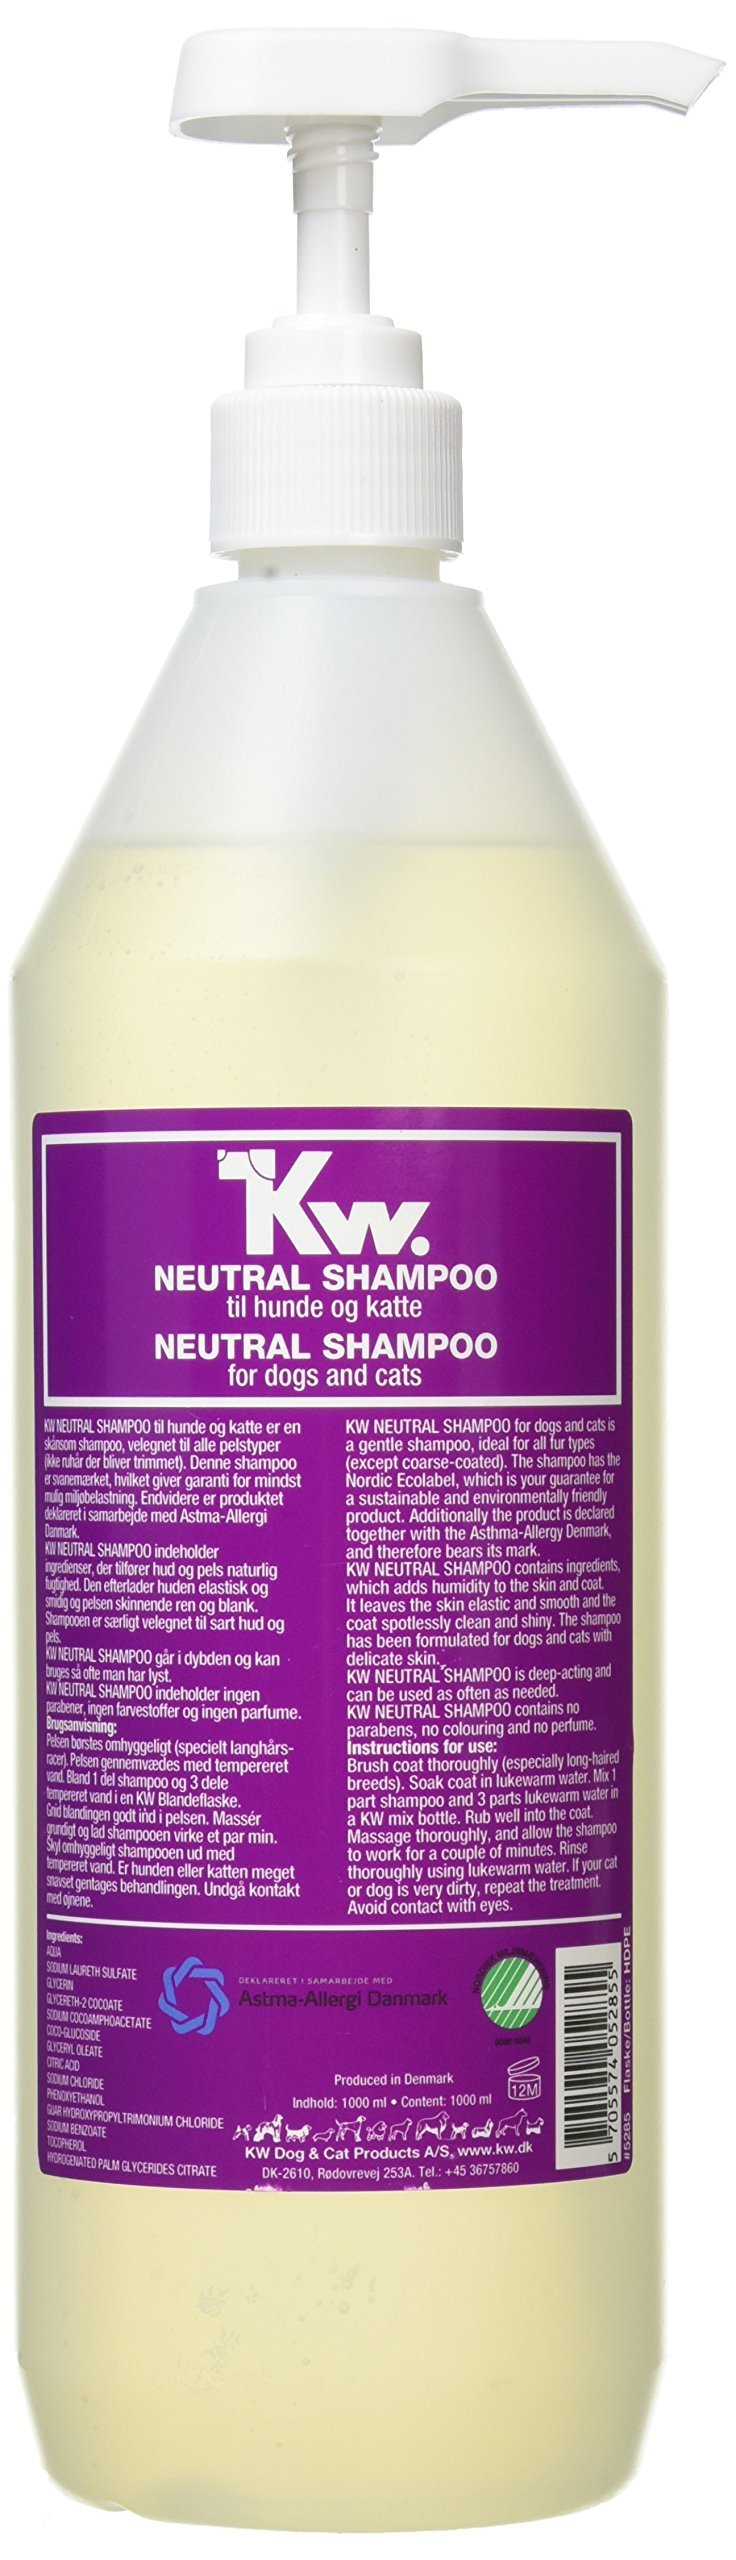 KW Neutral Shampoo - PawsPlanet Australia